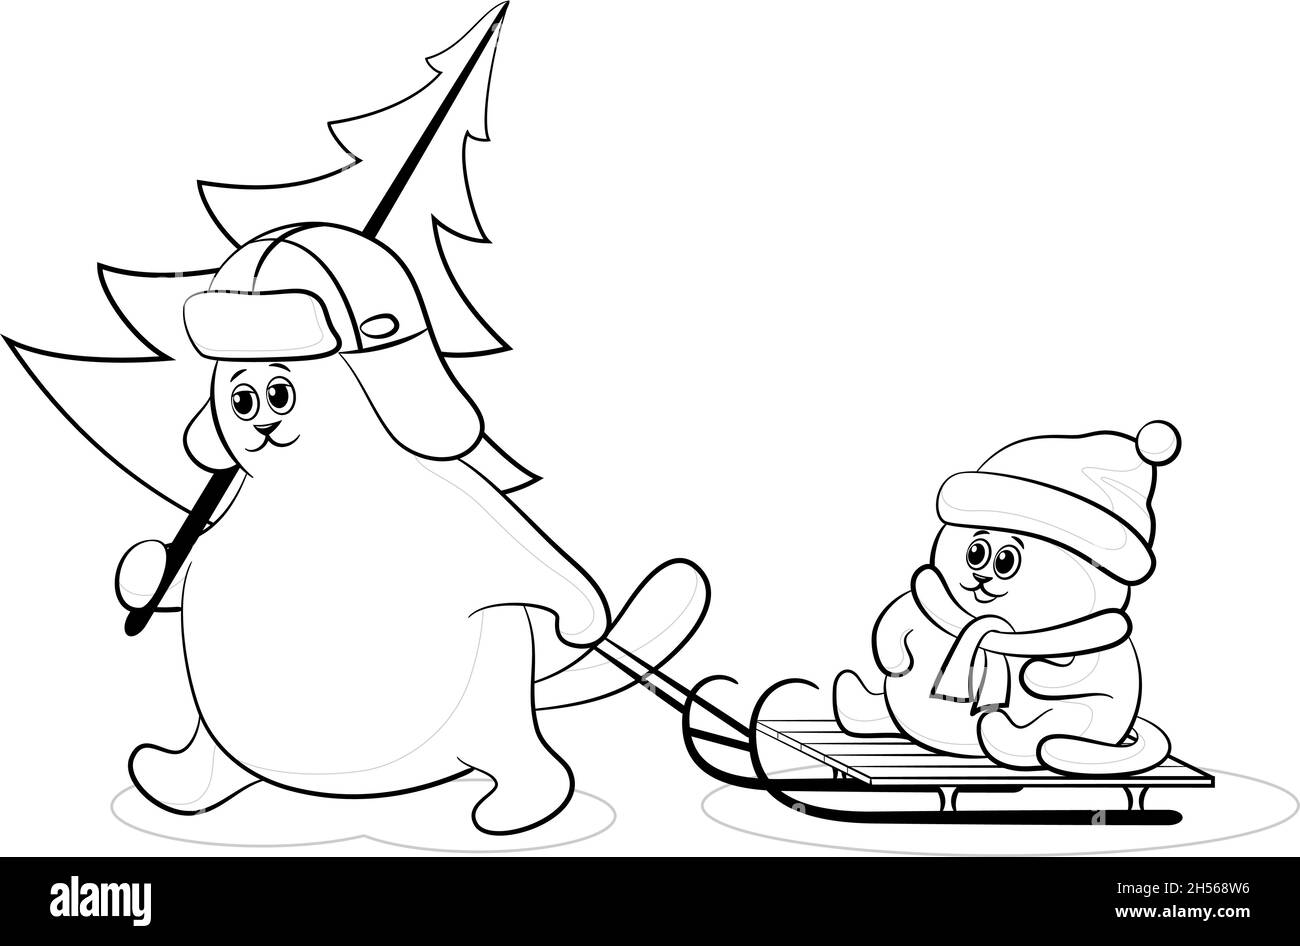 Dessin animé Père chat avec un arbre de Noël et enfant sur un traîneau, contours noirs isolés sur fond blanc.Vecteur Illustration de Vecteur